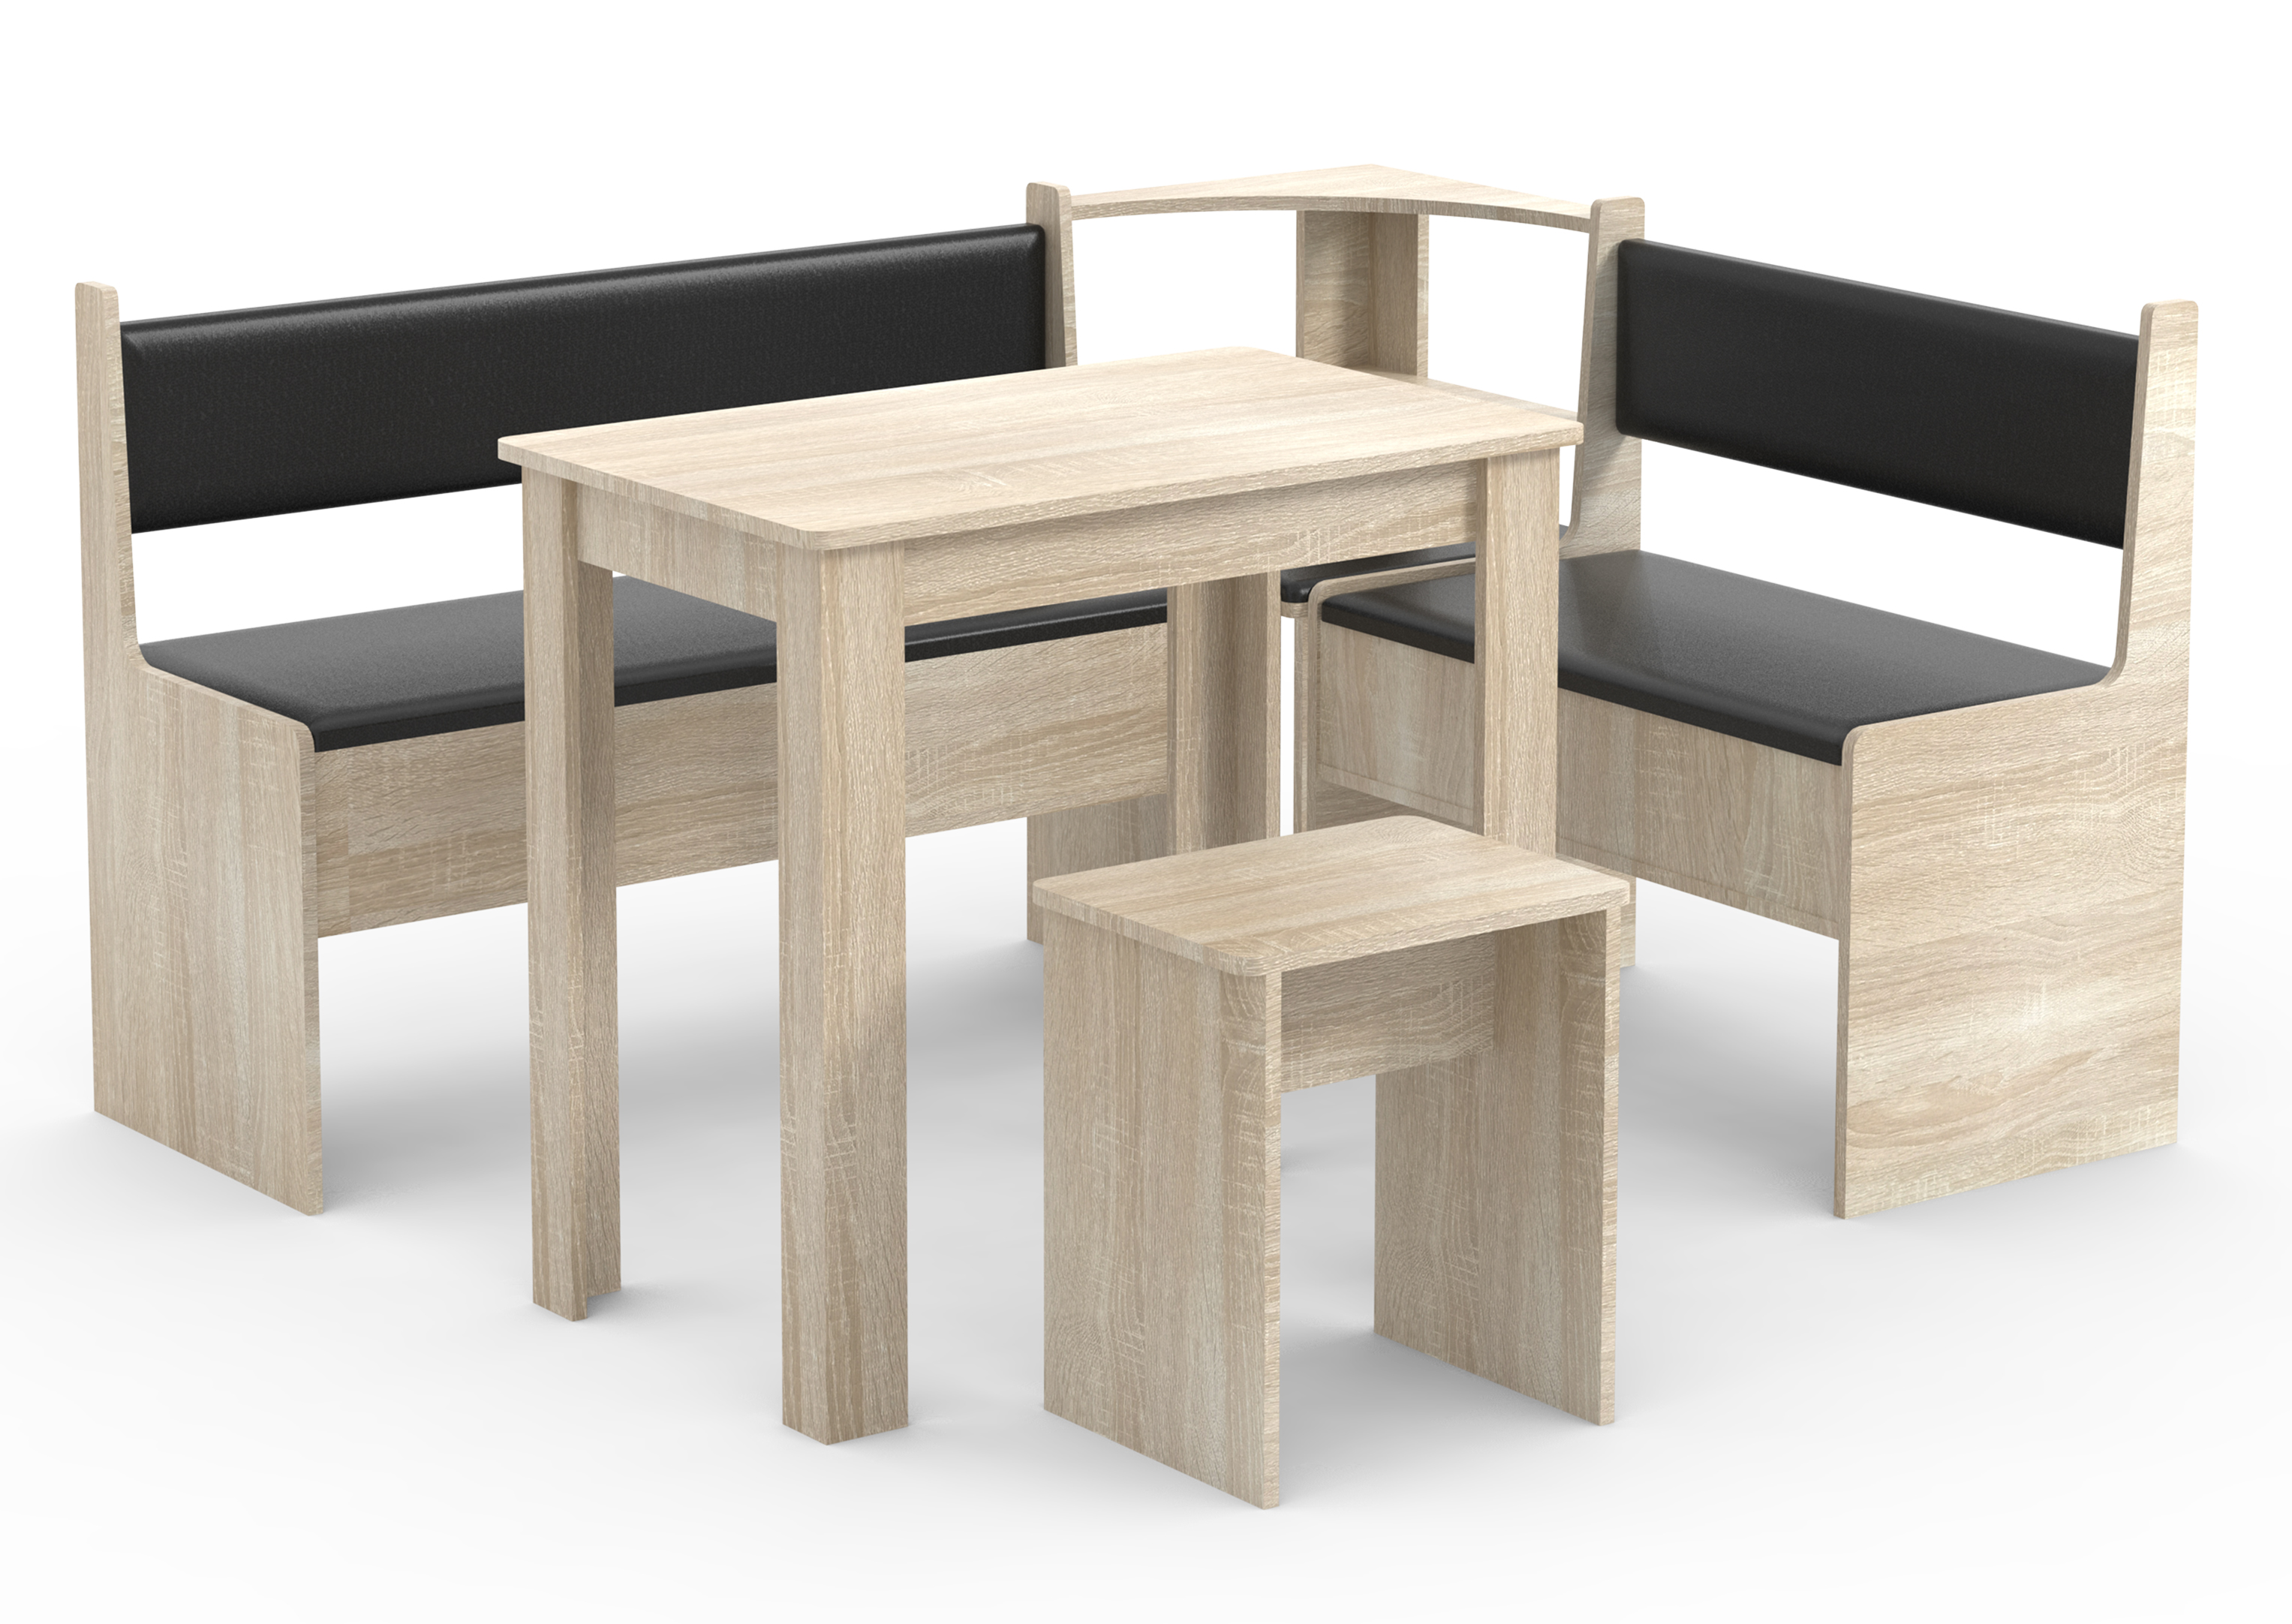 VCM NORDIC Esal Mini hjørnebænksæt, m. 1 bord, 2 bænke, 1 taburet - natur træ